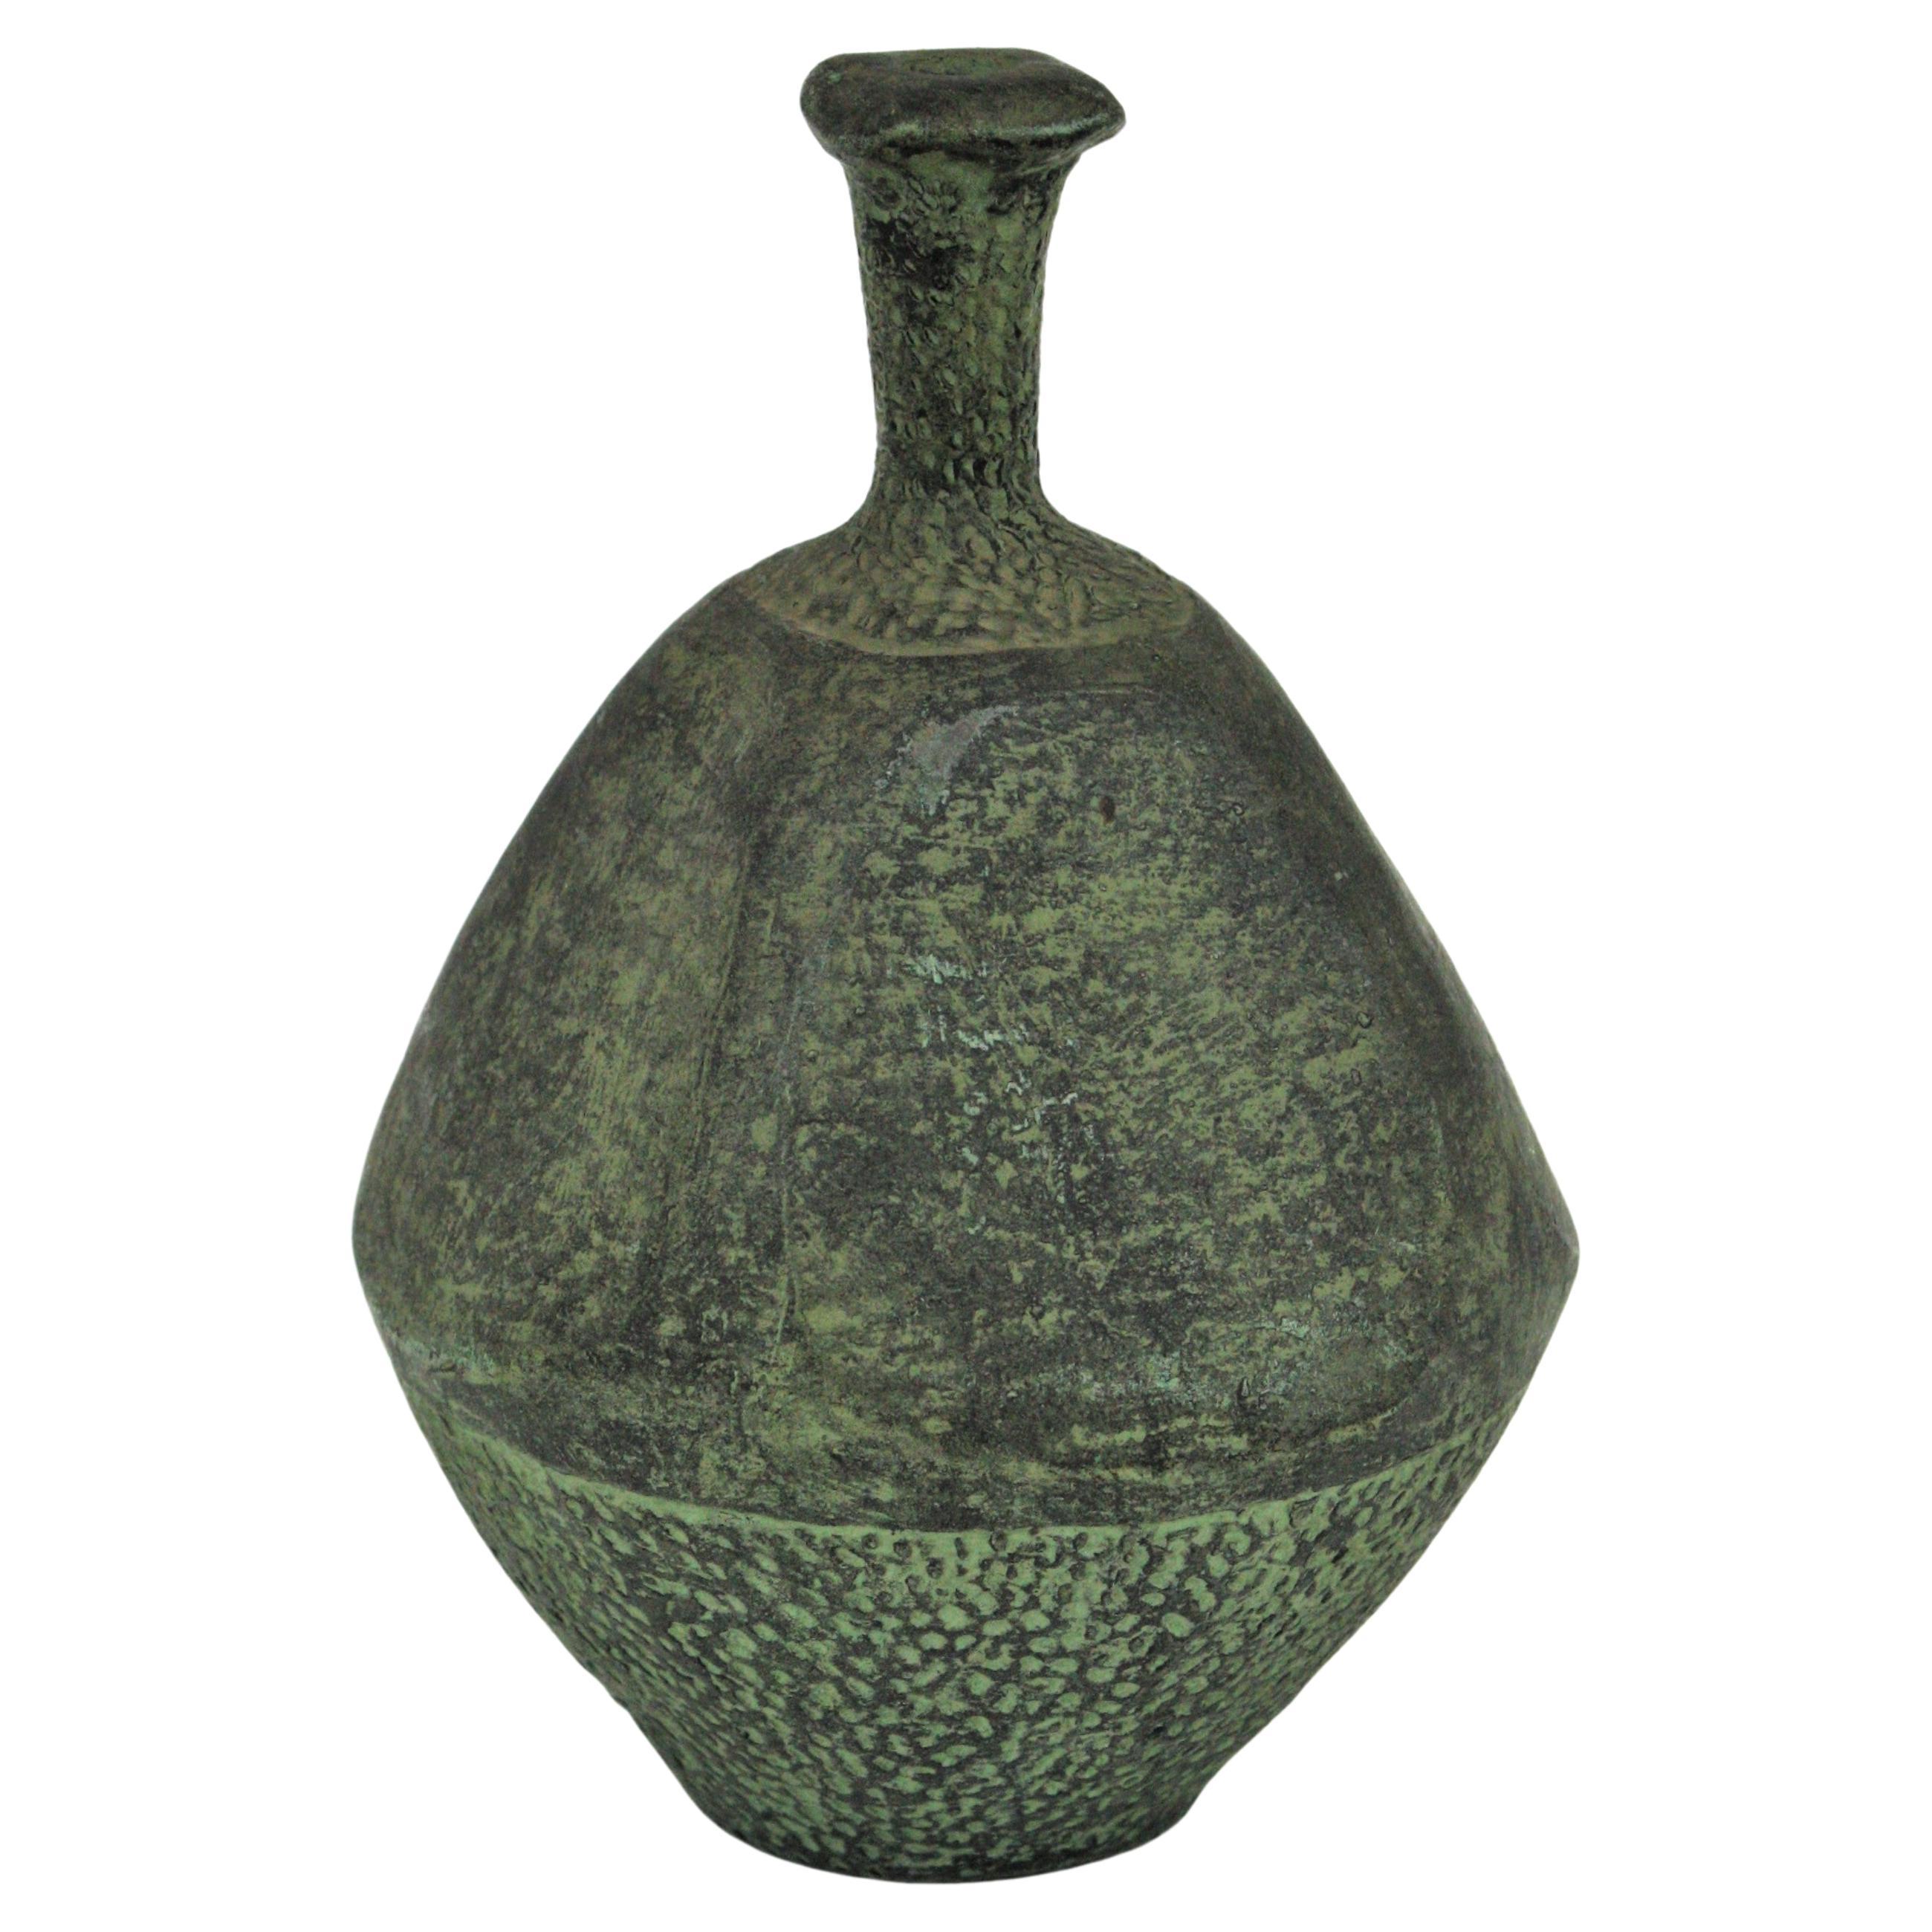 Grüne Terrakotta-Flaschenvase oder Gefäß aus Spanien